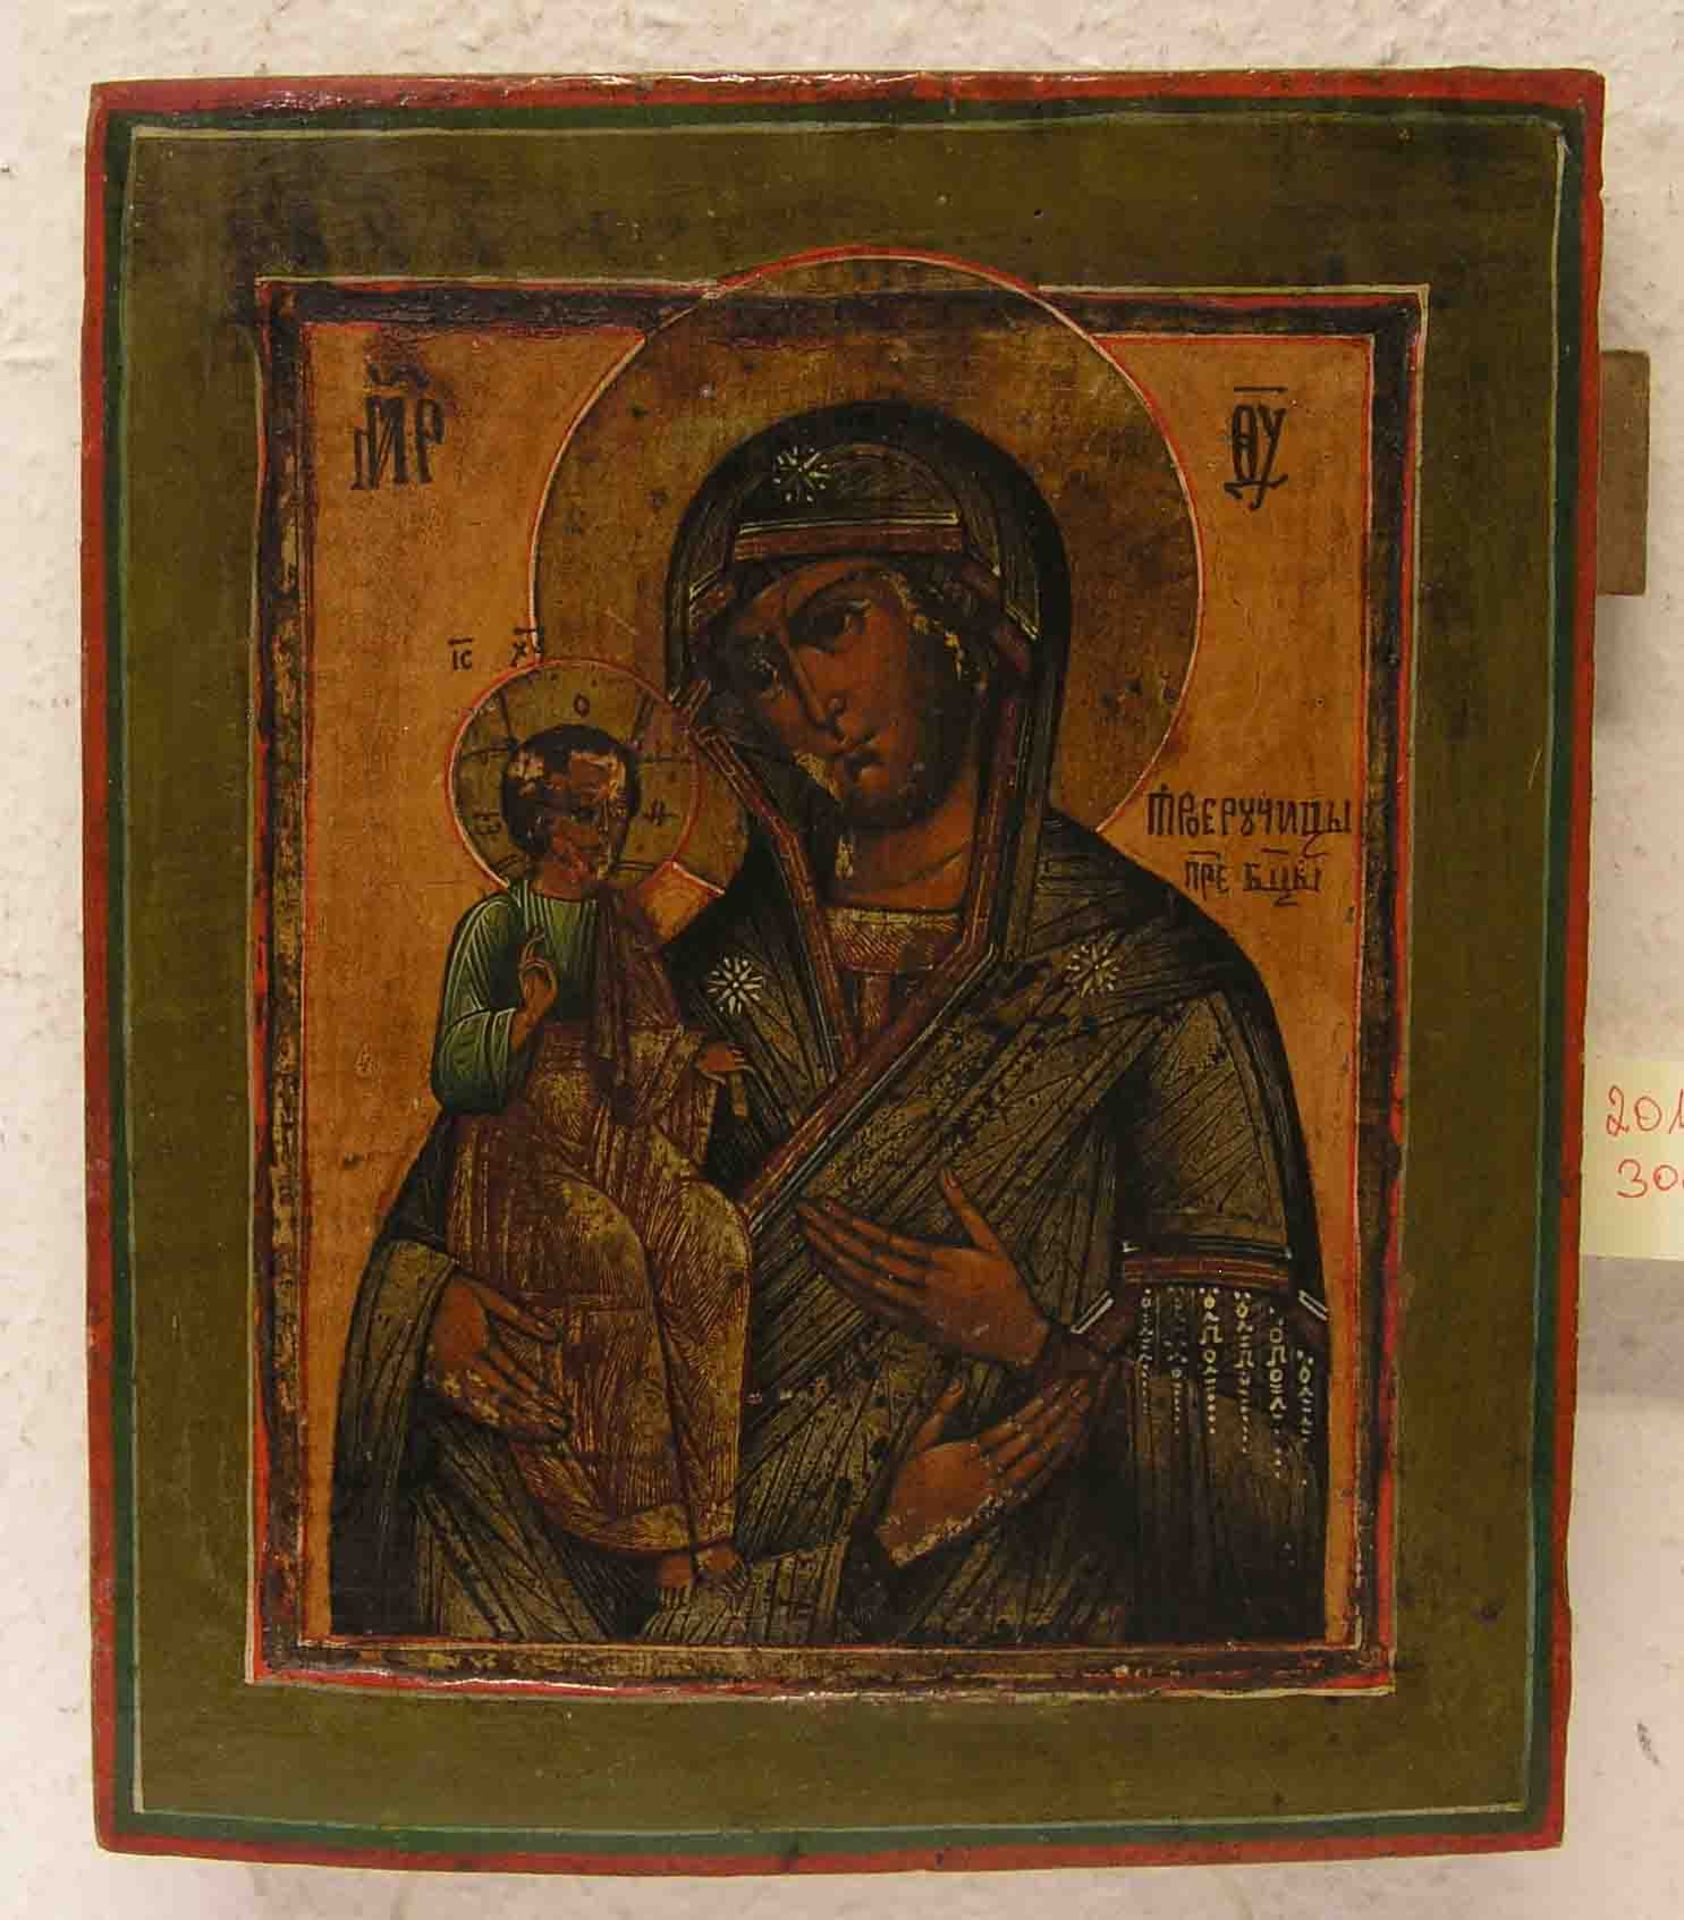 "Muttergottes mit Jesuskind". Ikone, Russland, 19. Jh., 31 x 26cm. Erworben 1999 imKunsthandel